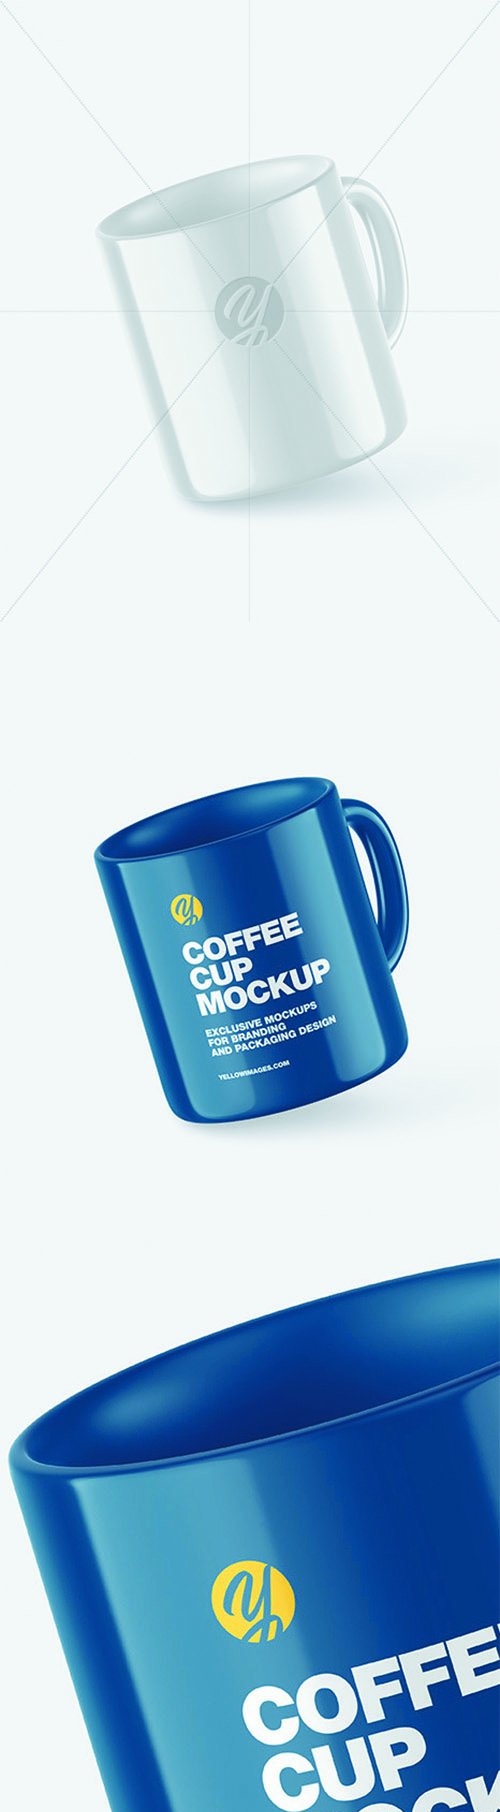 Glossy Coffee Cup Mockup 68869